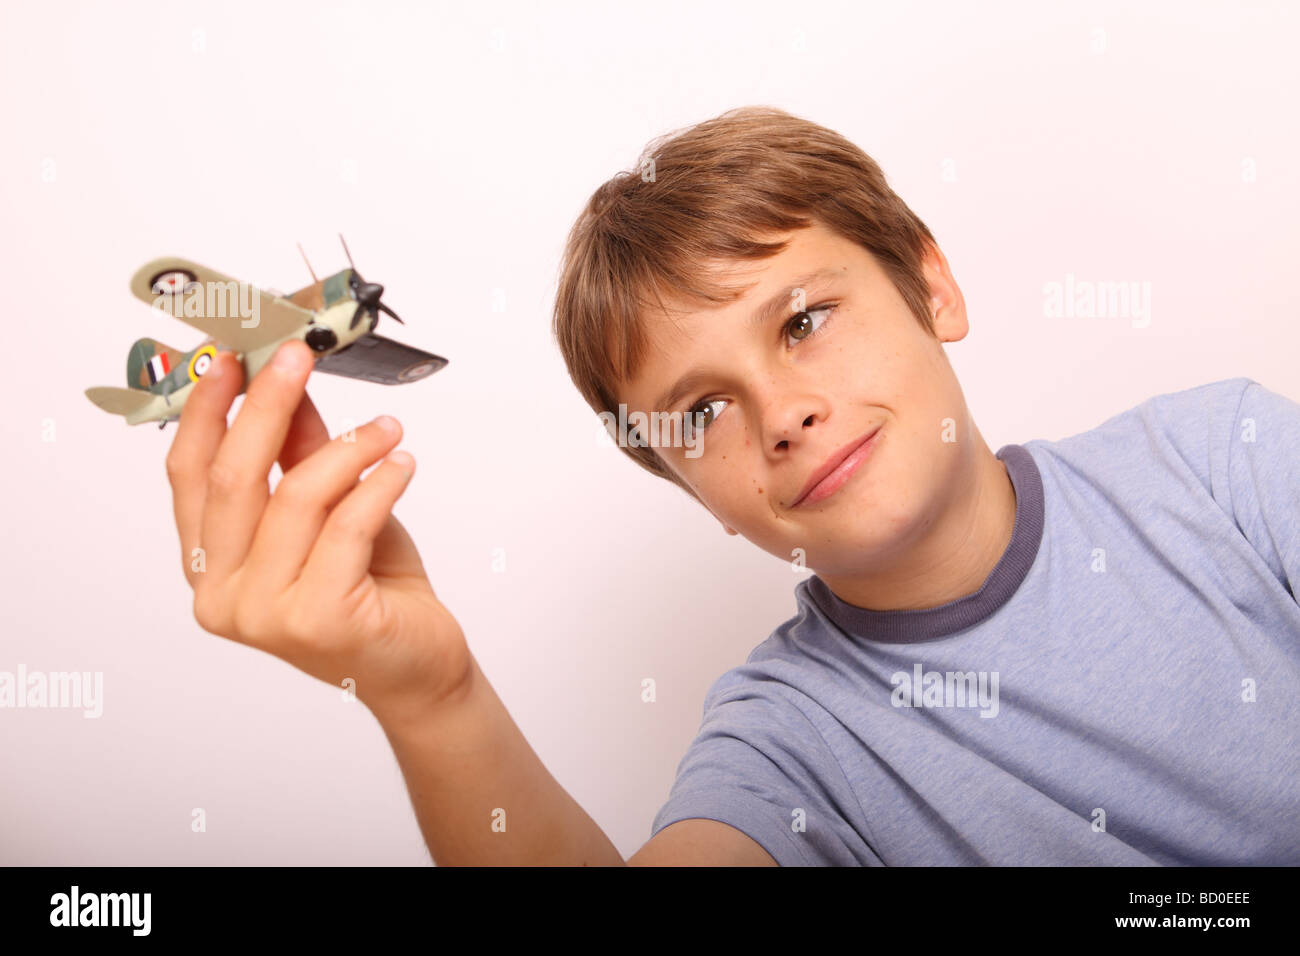 Jeune garçon de 12 ans avec toy plastic model airplane Banque D'Images